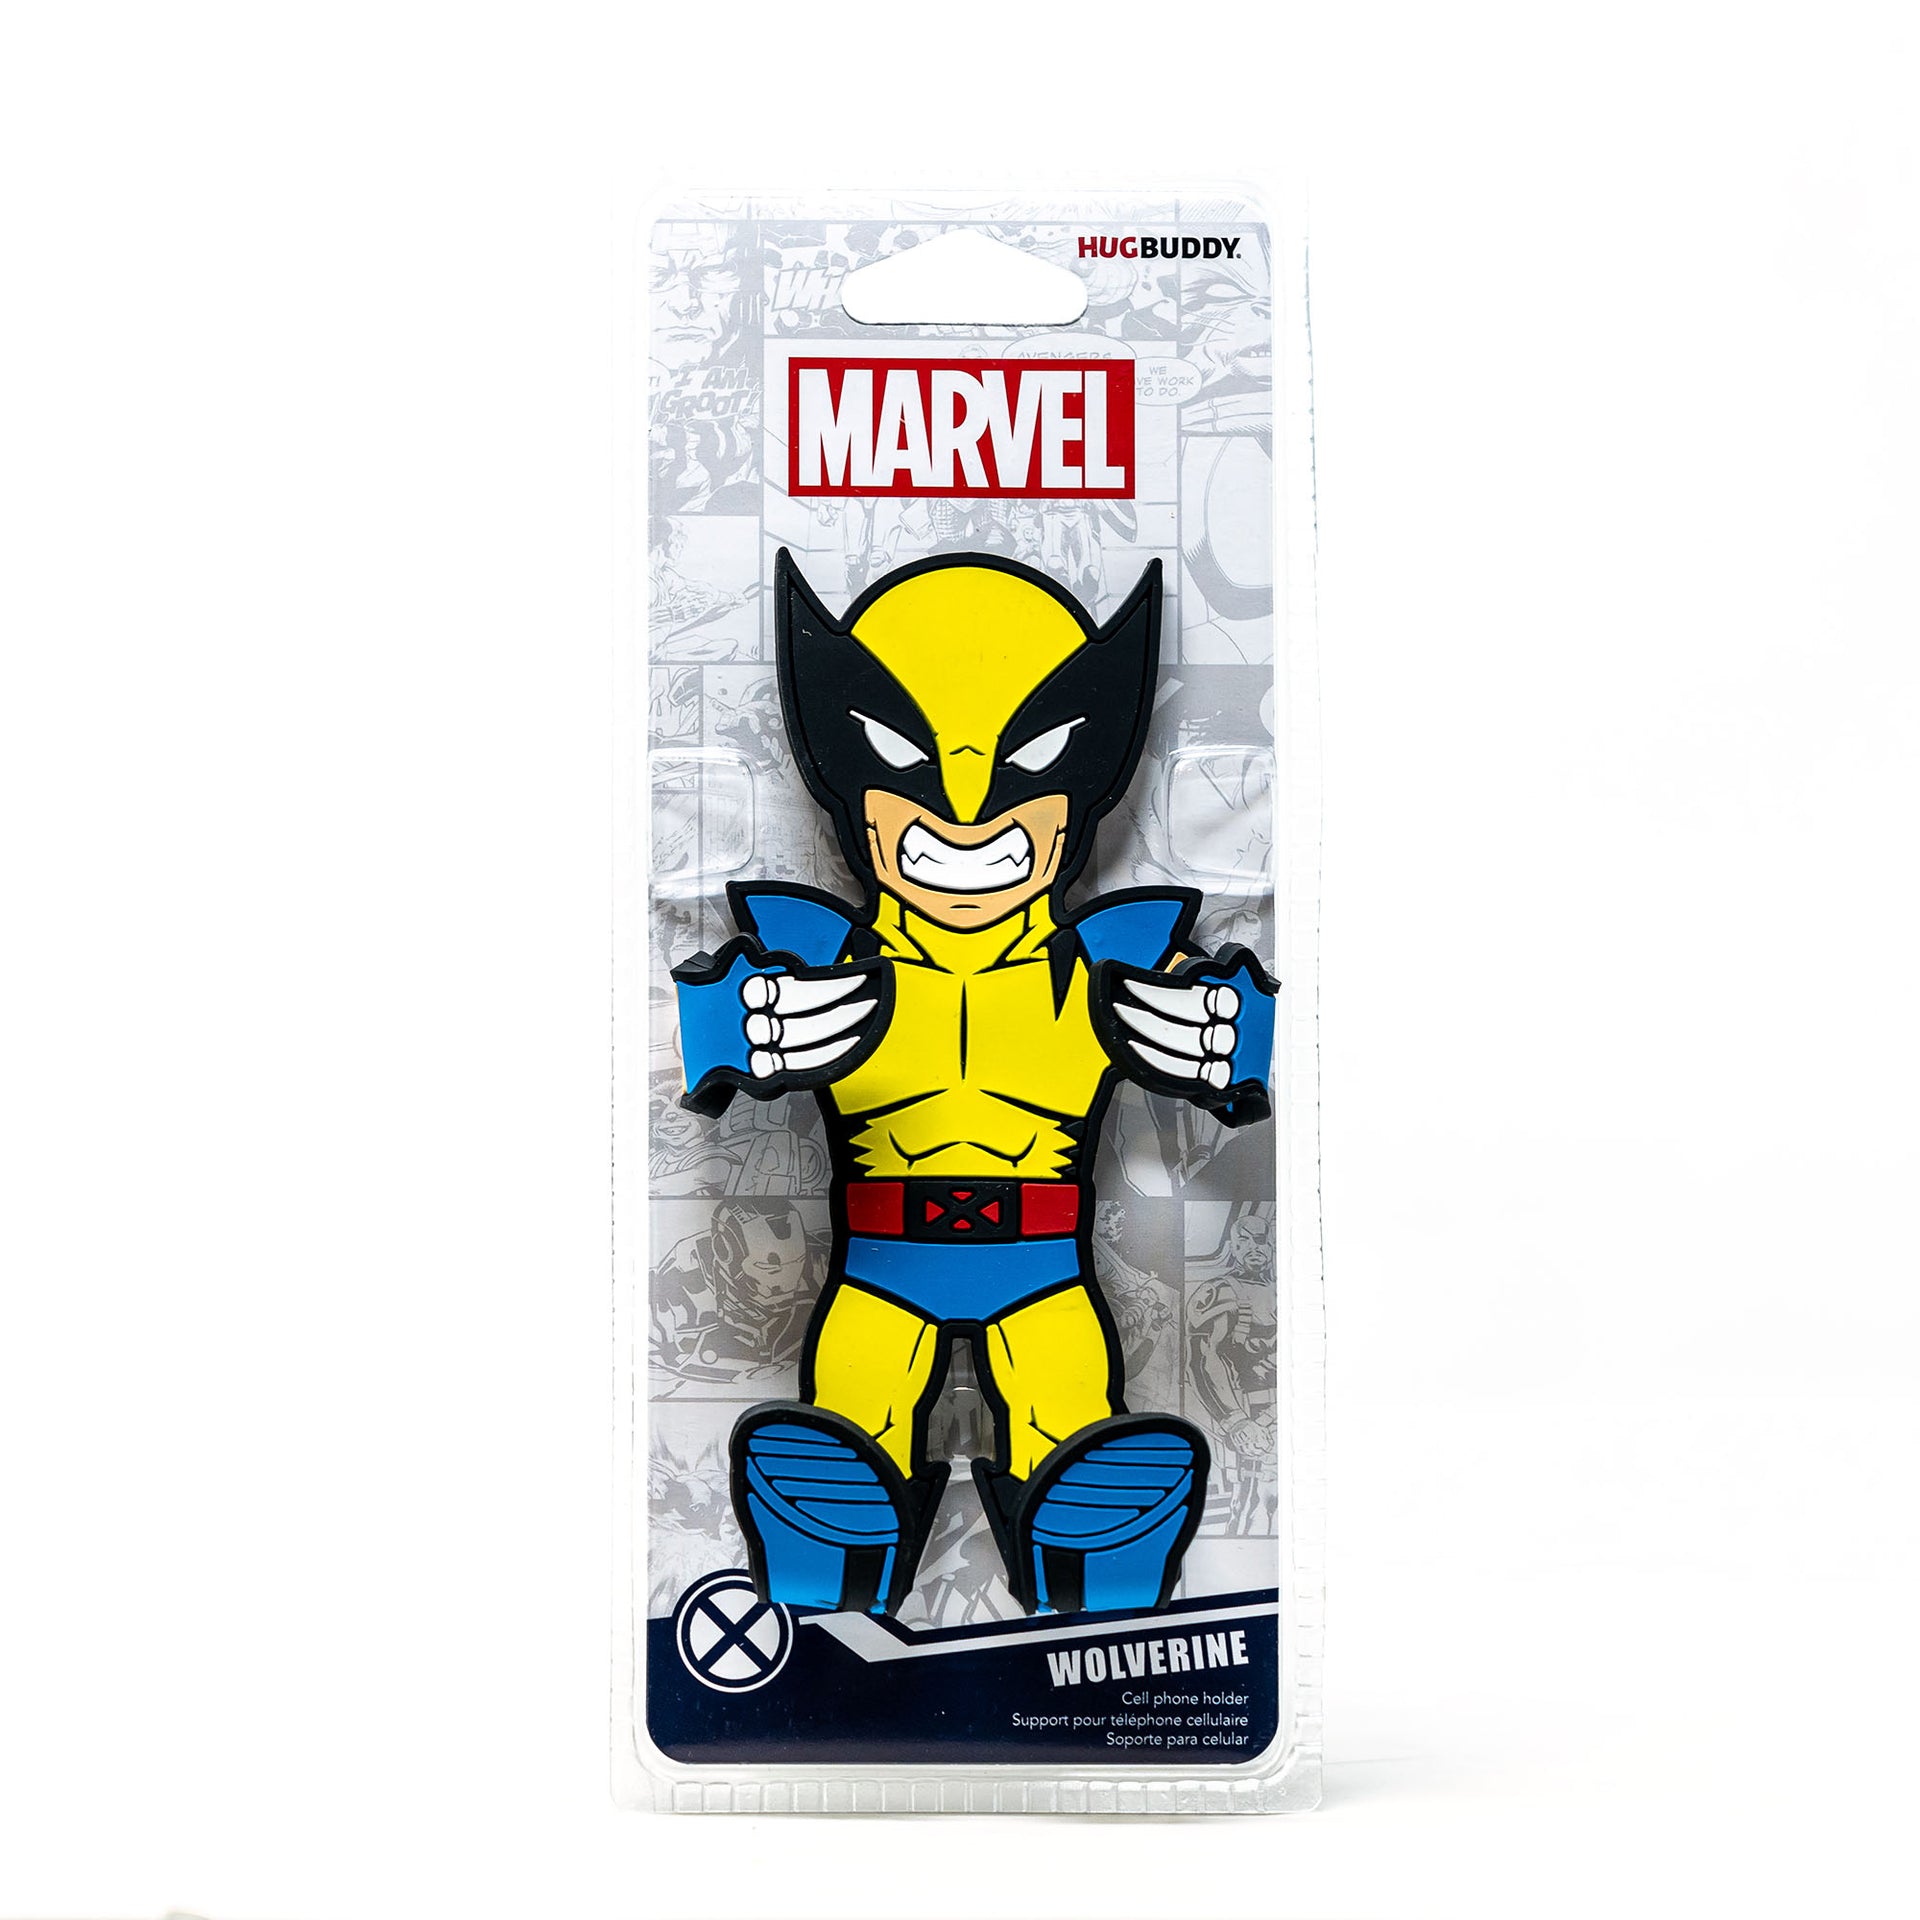 Image of Marvel Wolverine Hug Buddy packaging